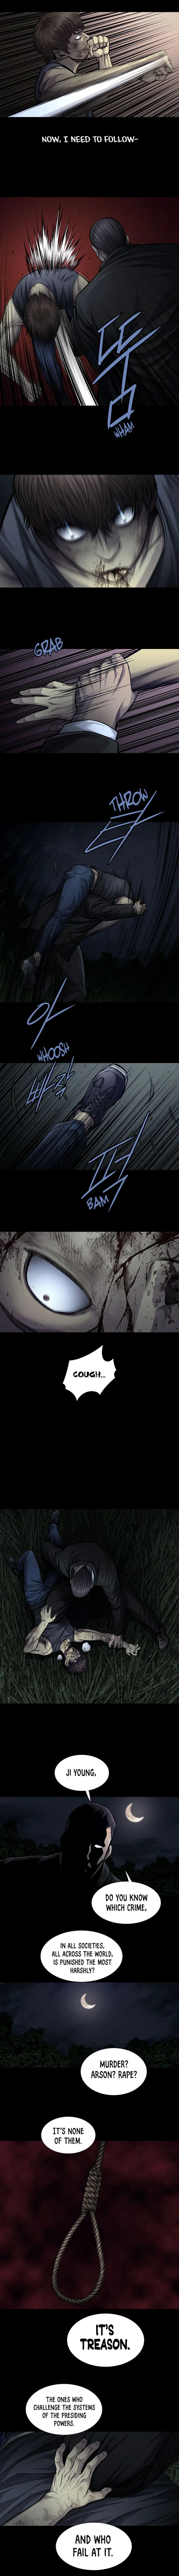 Vigilante - Chapter 78 Page 4